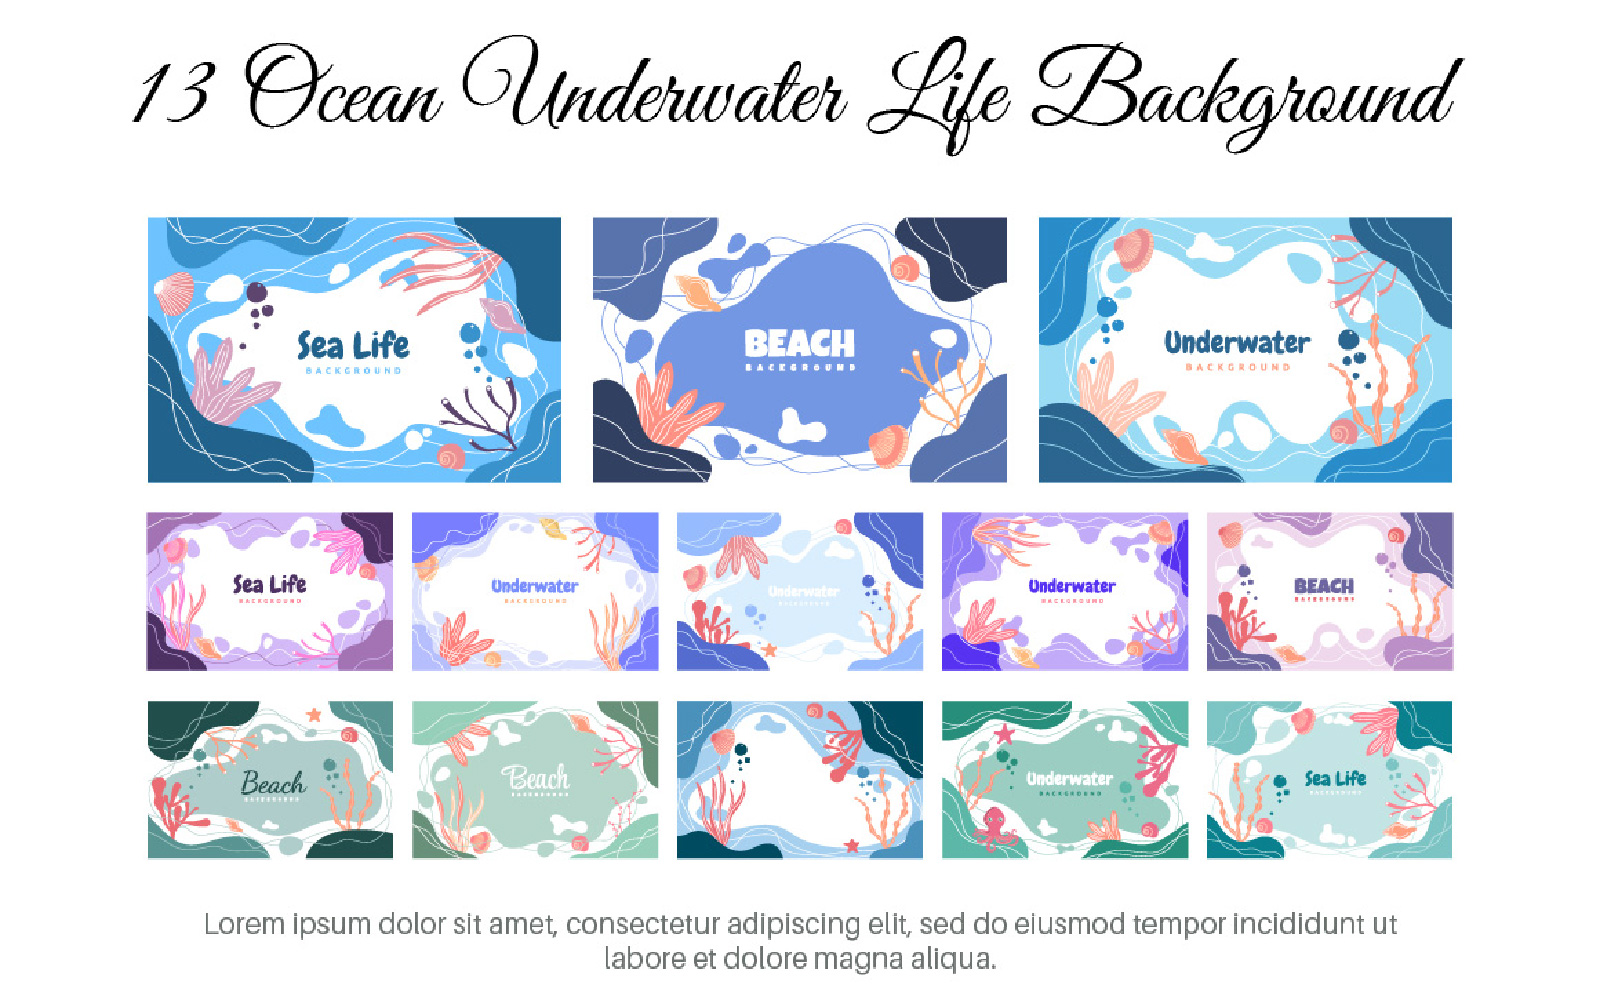 13 Ocean Underwater Life Background